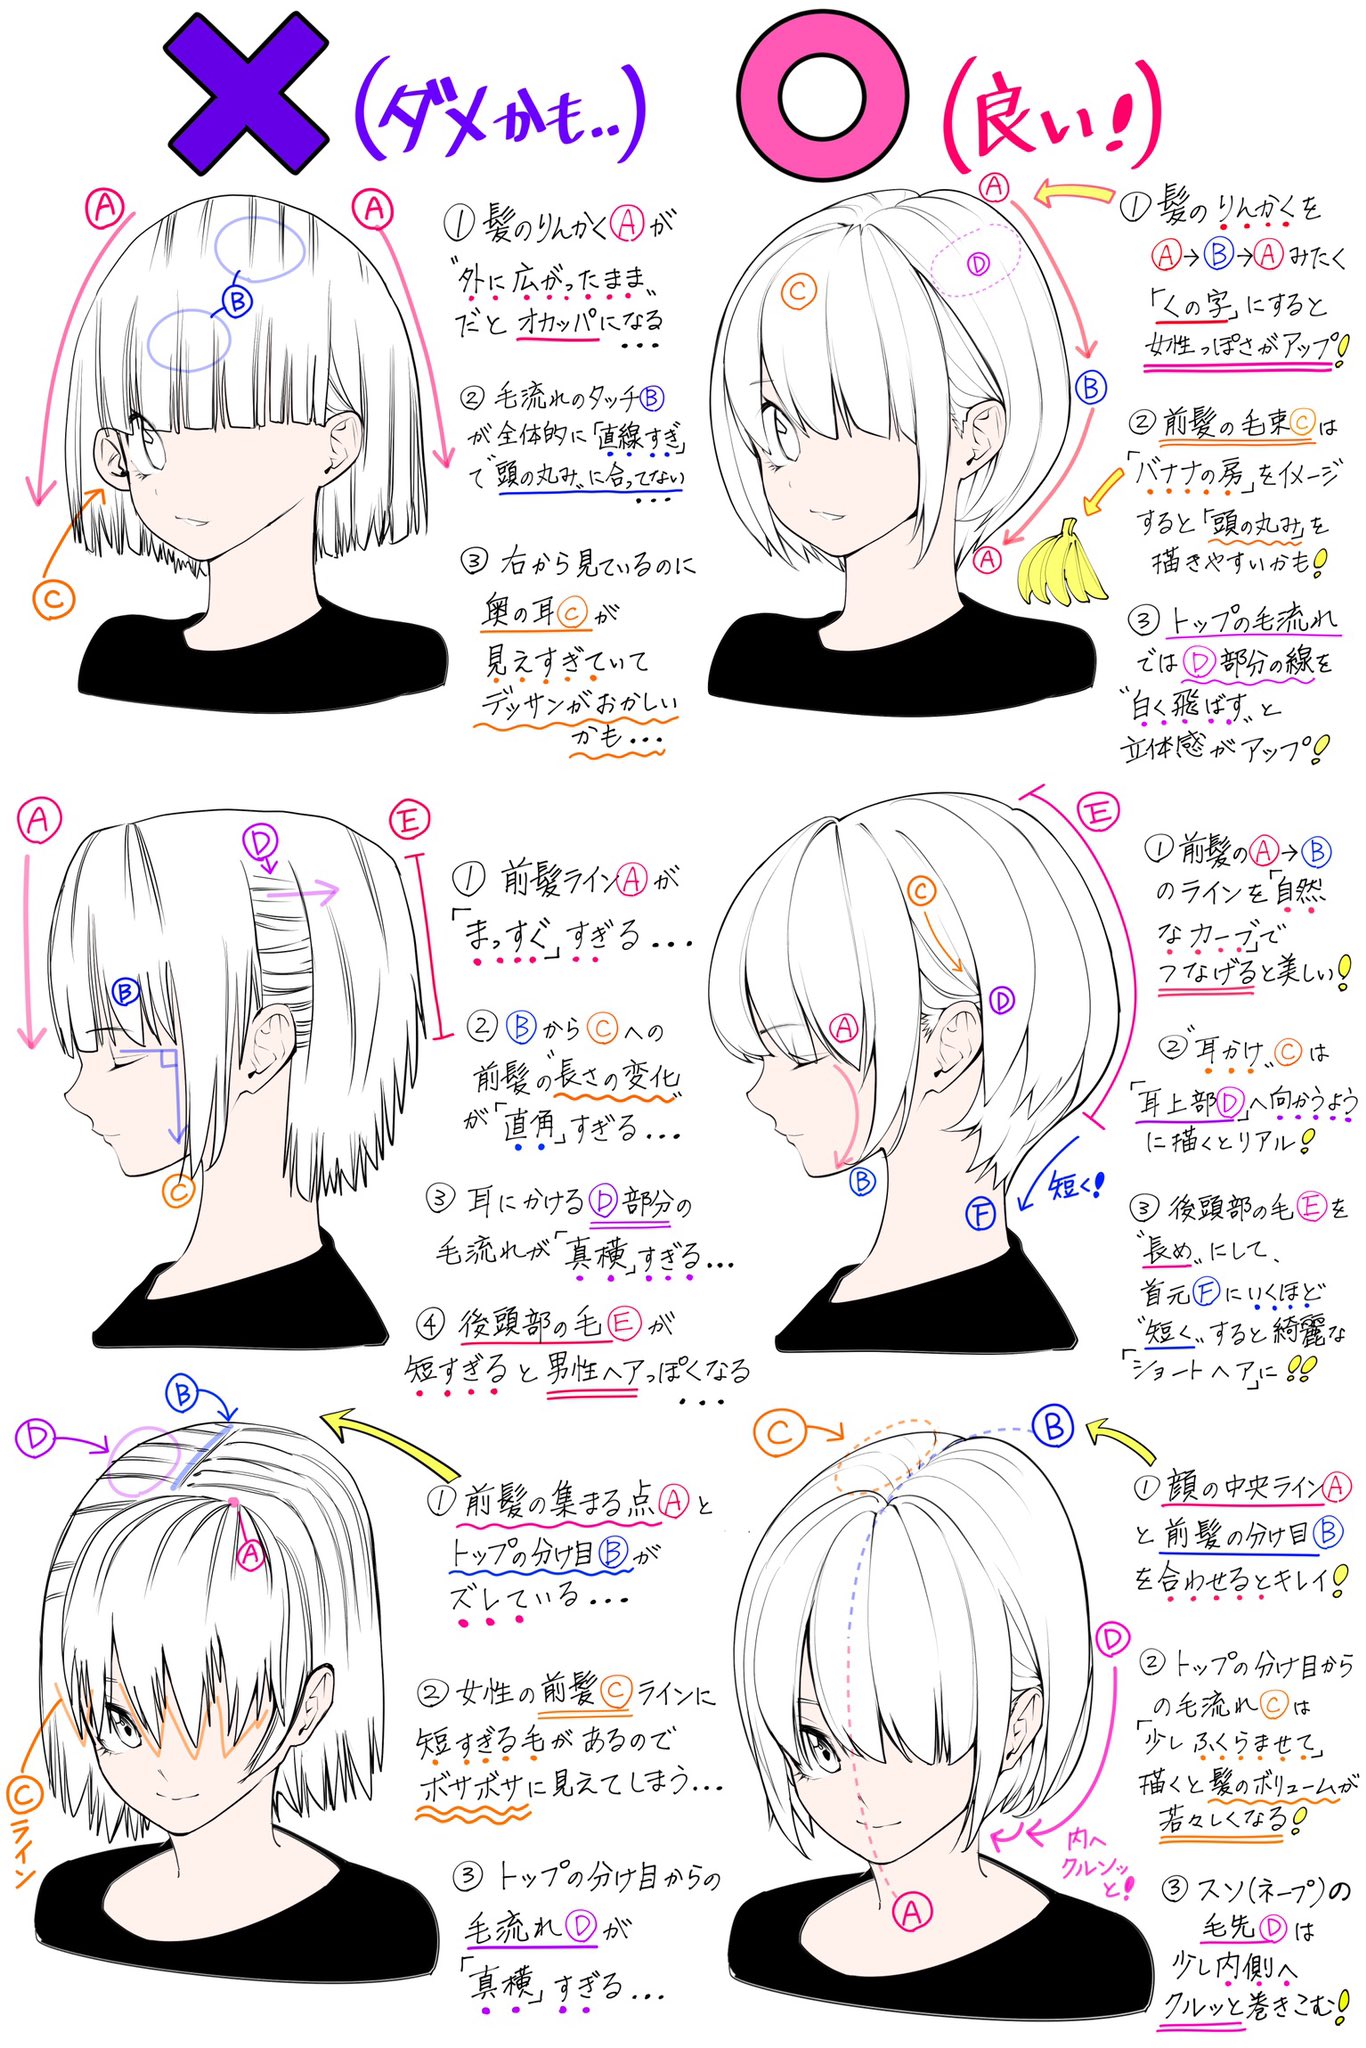 吉村拓也 イラスト講座 ショートヘアの女の子の描き方 髪のシルエットや柔らかさが上達する ダメかも と 良いかも T Co 3eckrnbnxc Twitter